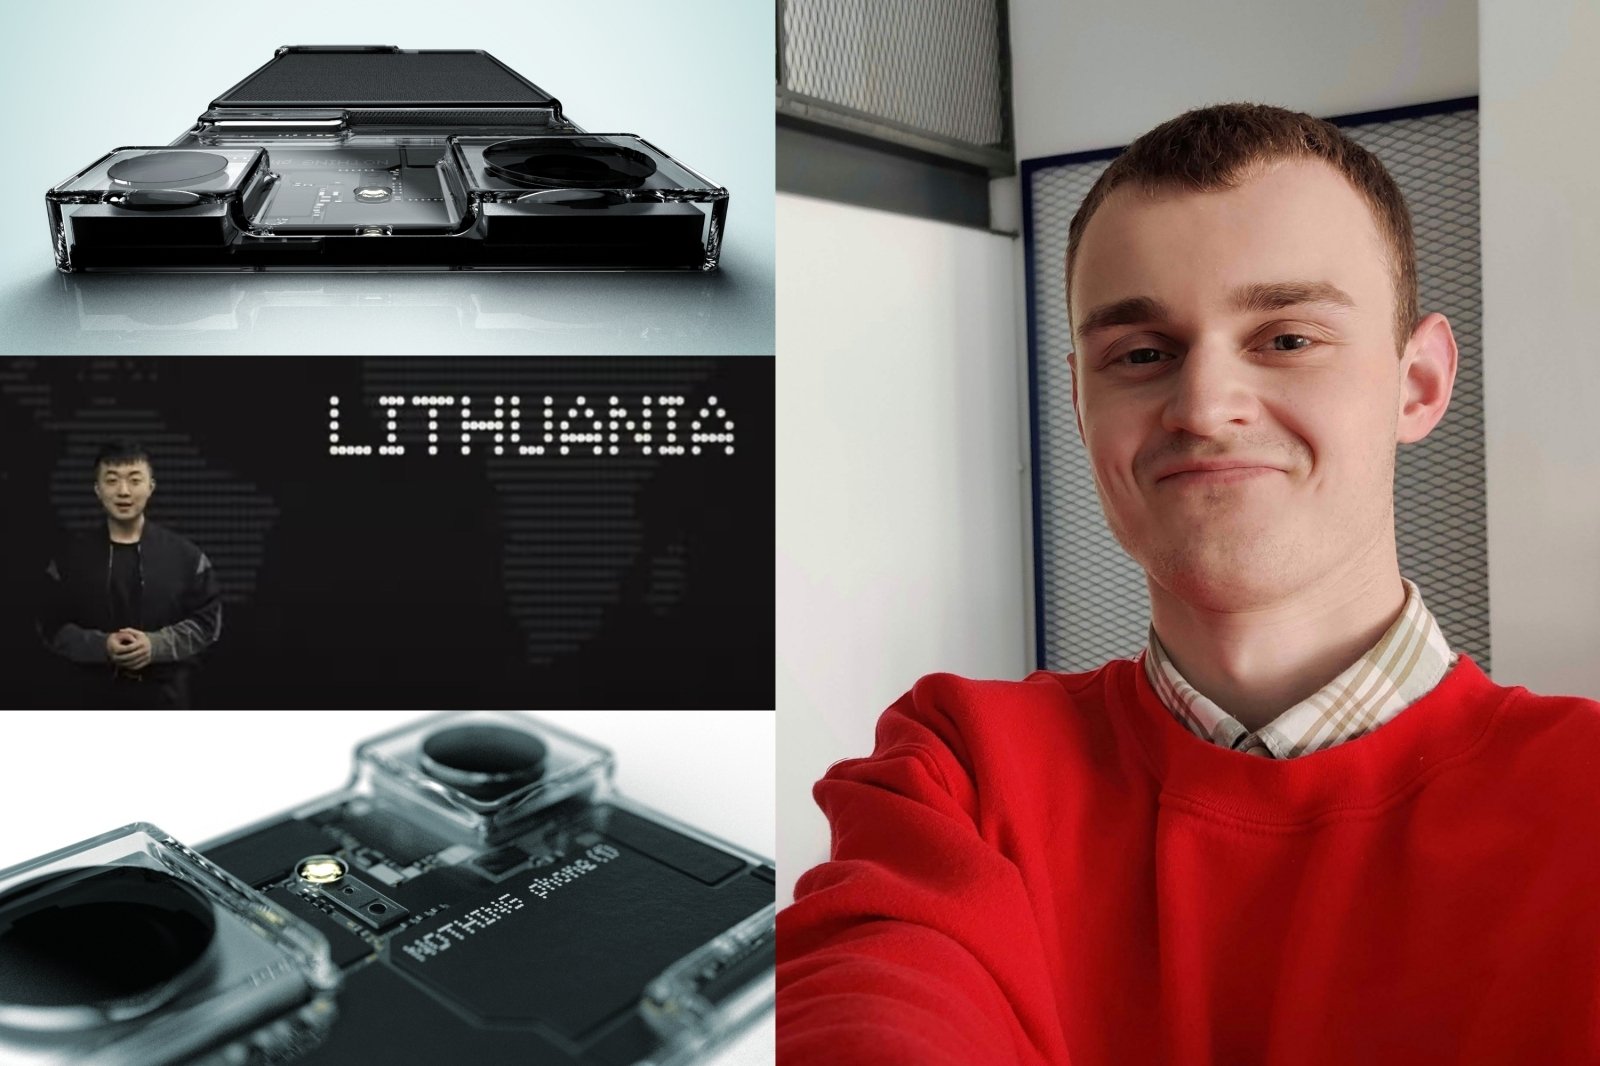 Litauiske studenters modige idé har blitt anerkjent over hele verden av teknologiutviklere: det er den eneste måten å se hvor kul jeg er